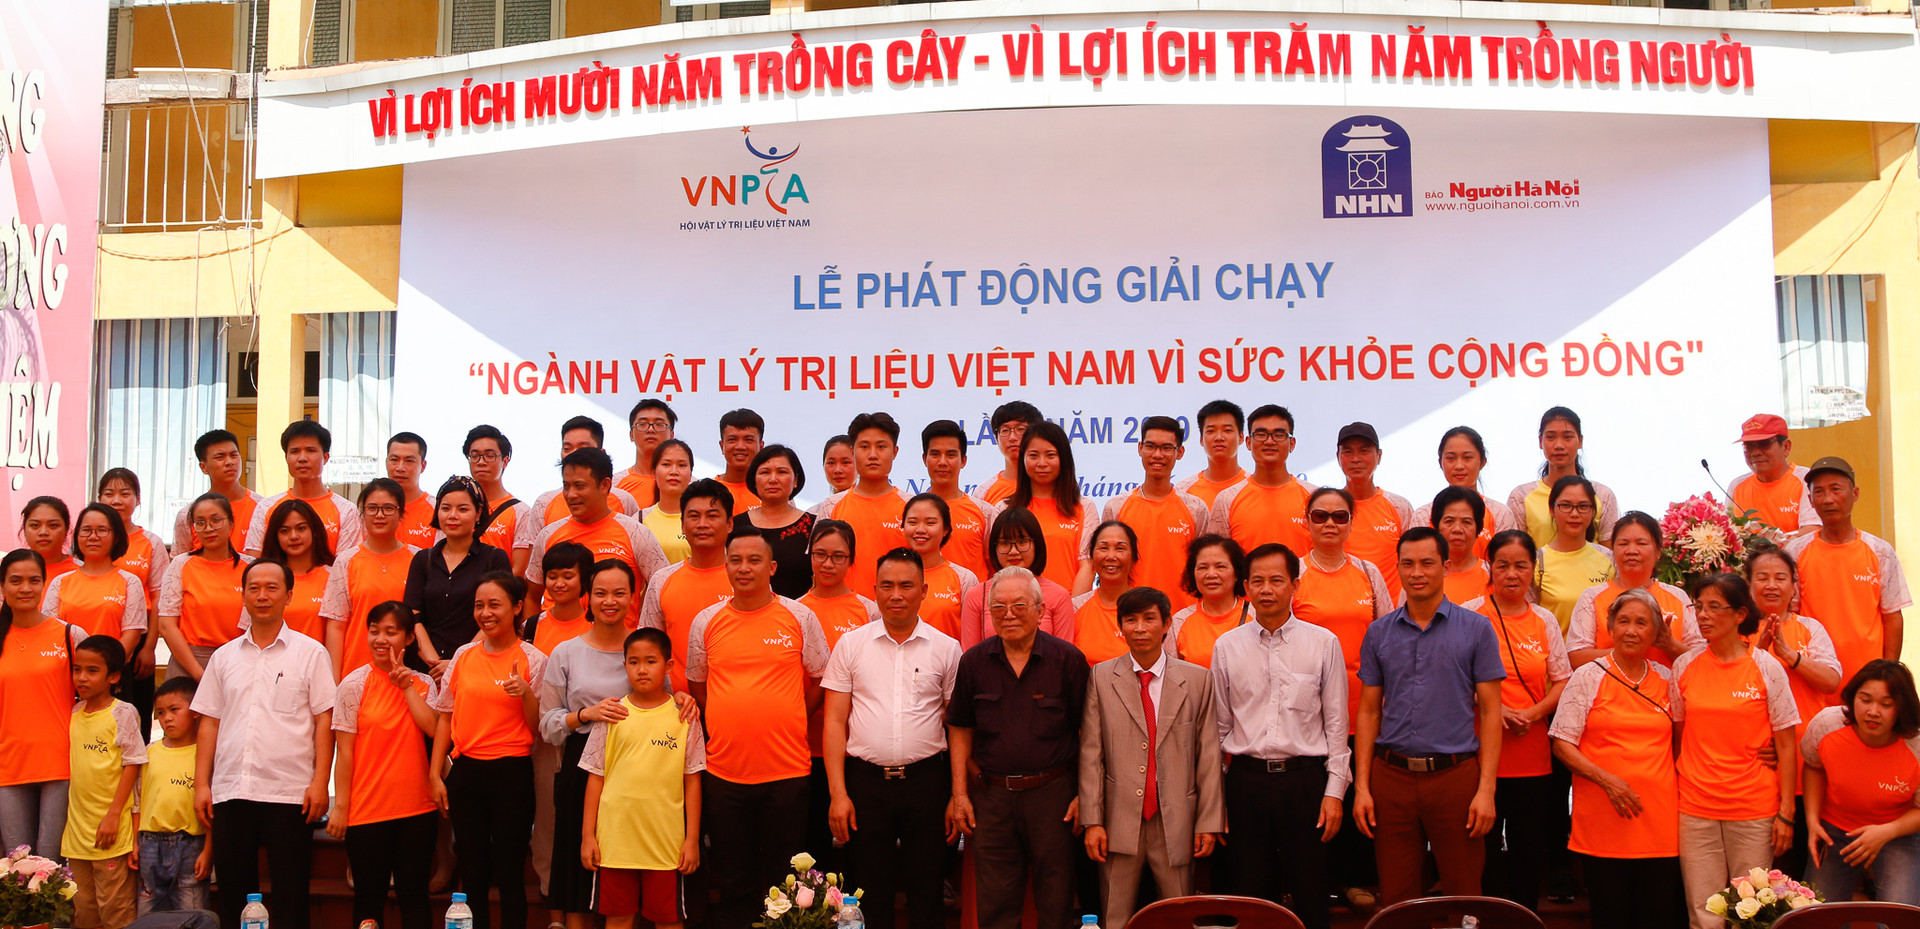 Phát động giải chạy “Ngành Vật lý trị liệu Việt Nam vì sức khỏe cộng đồng”